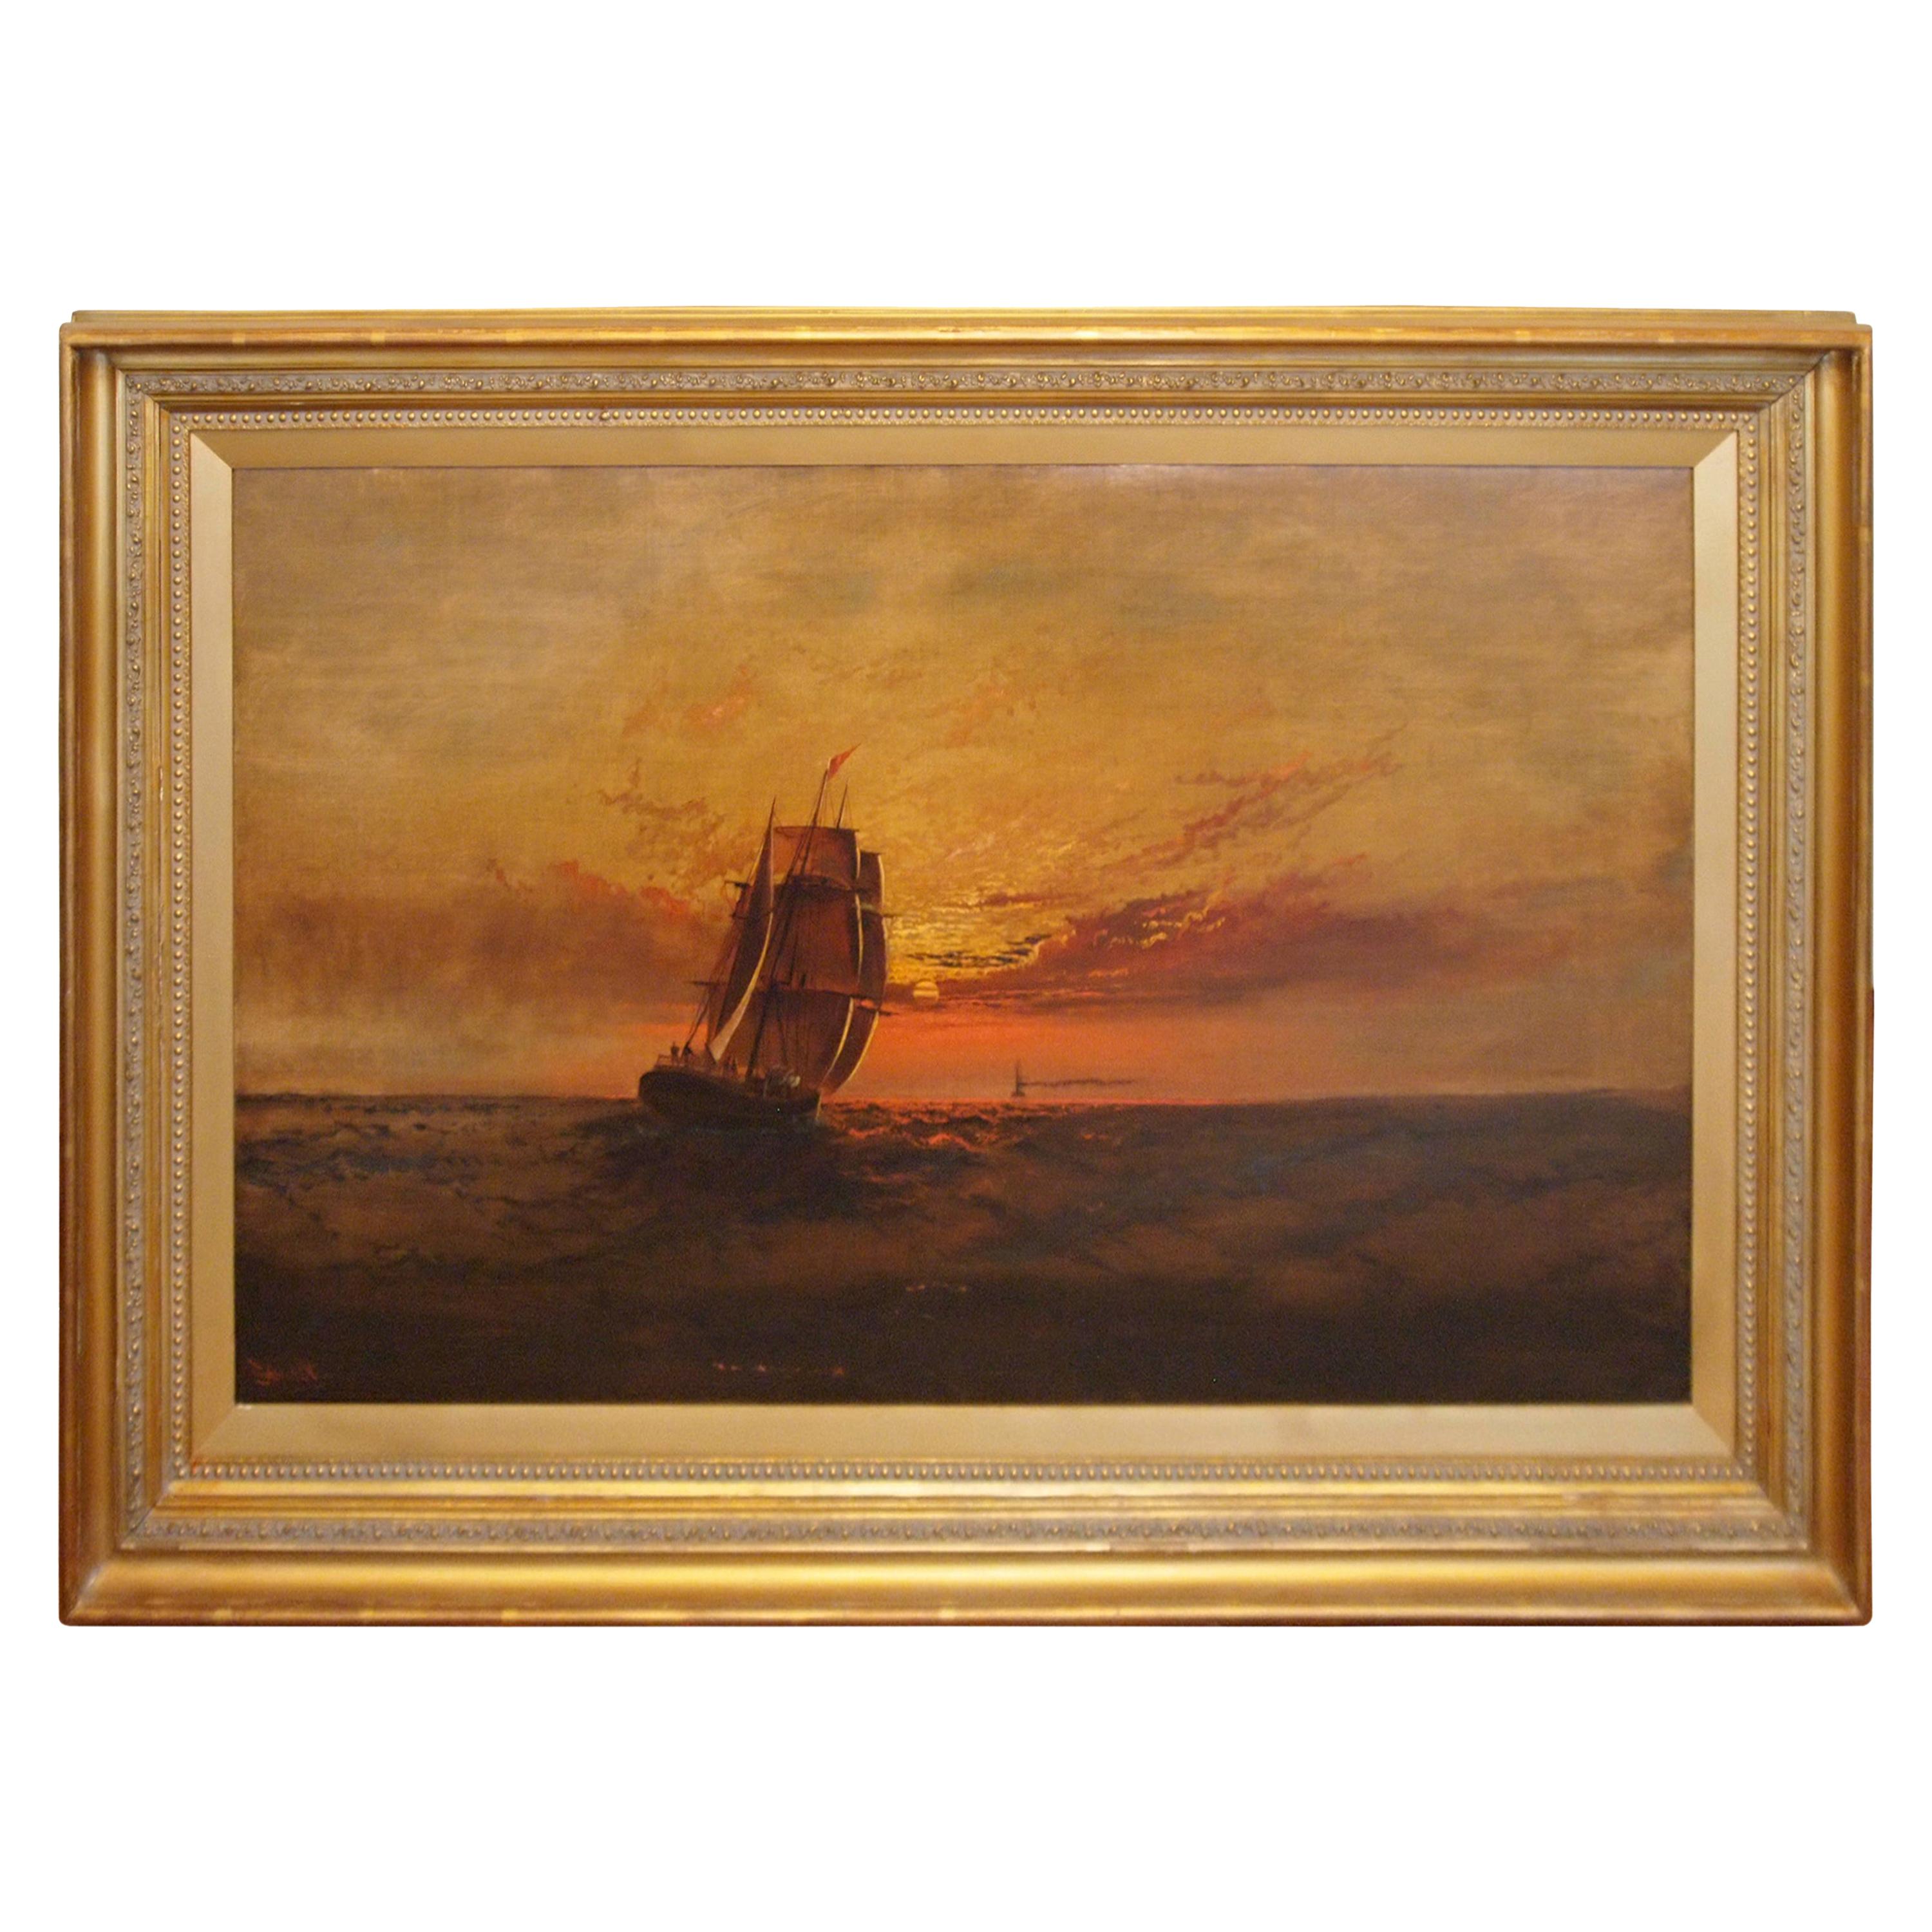 Marine Scene at Sunset by James Everett Stuart